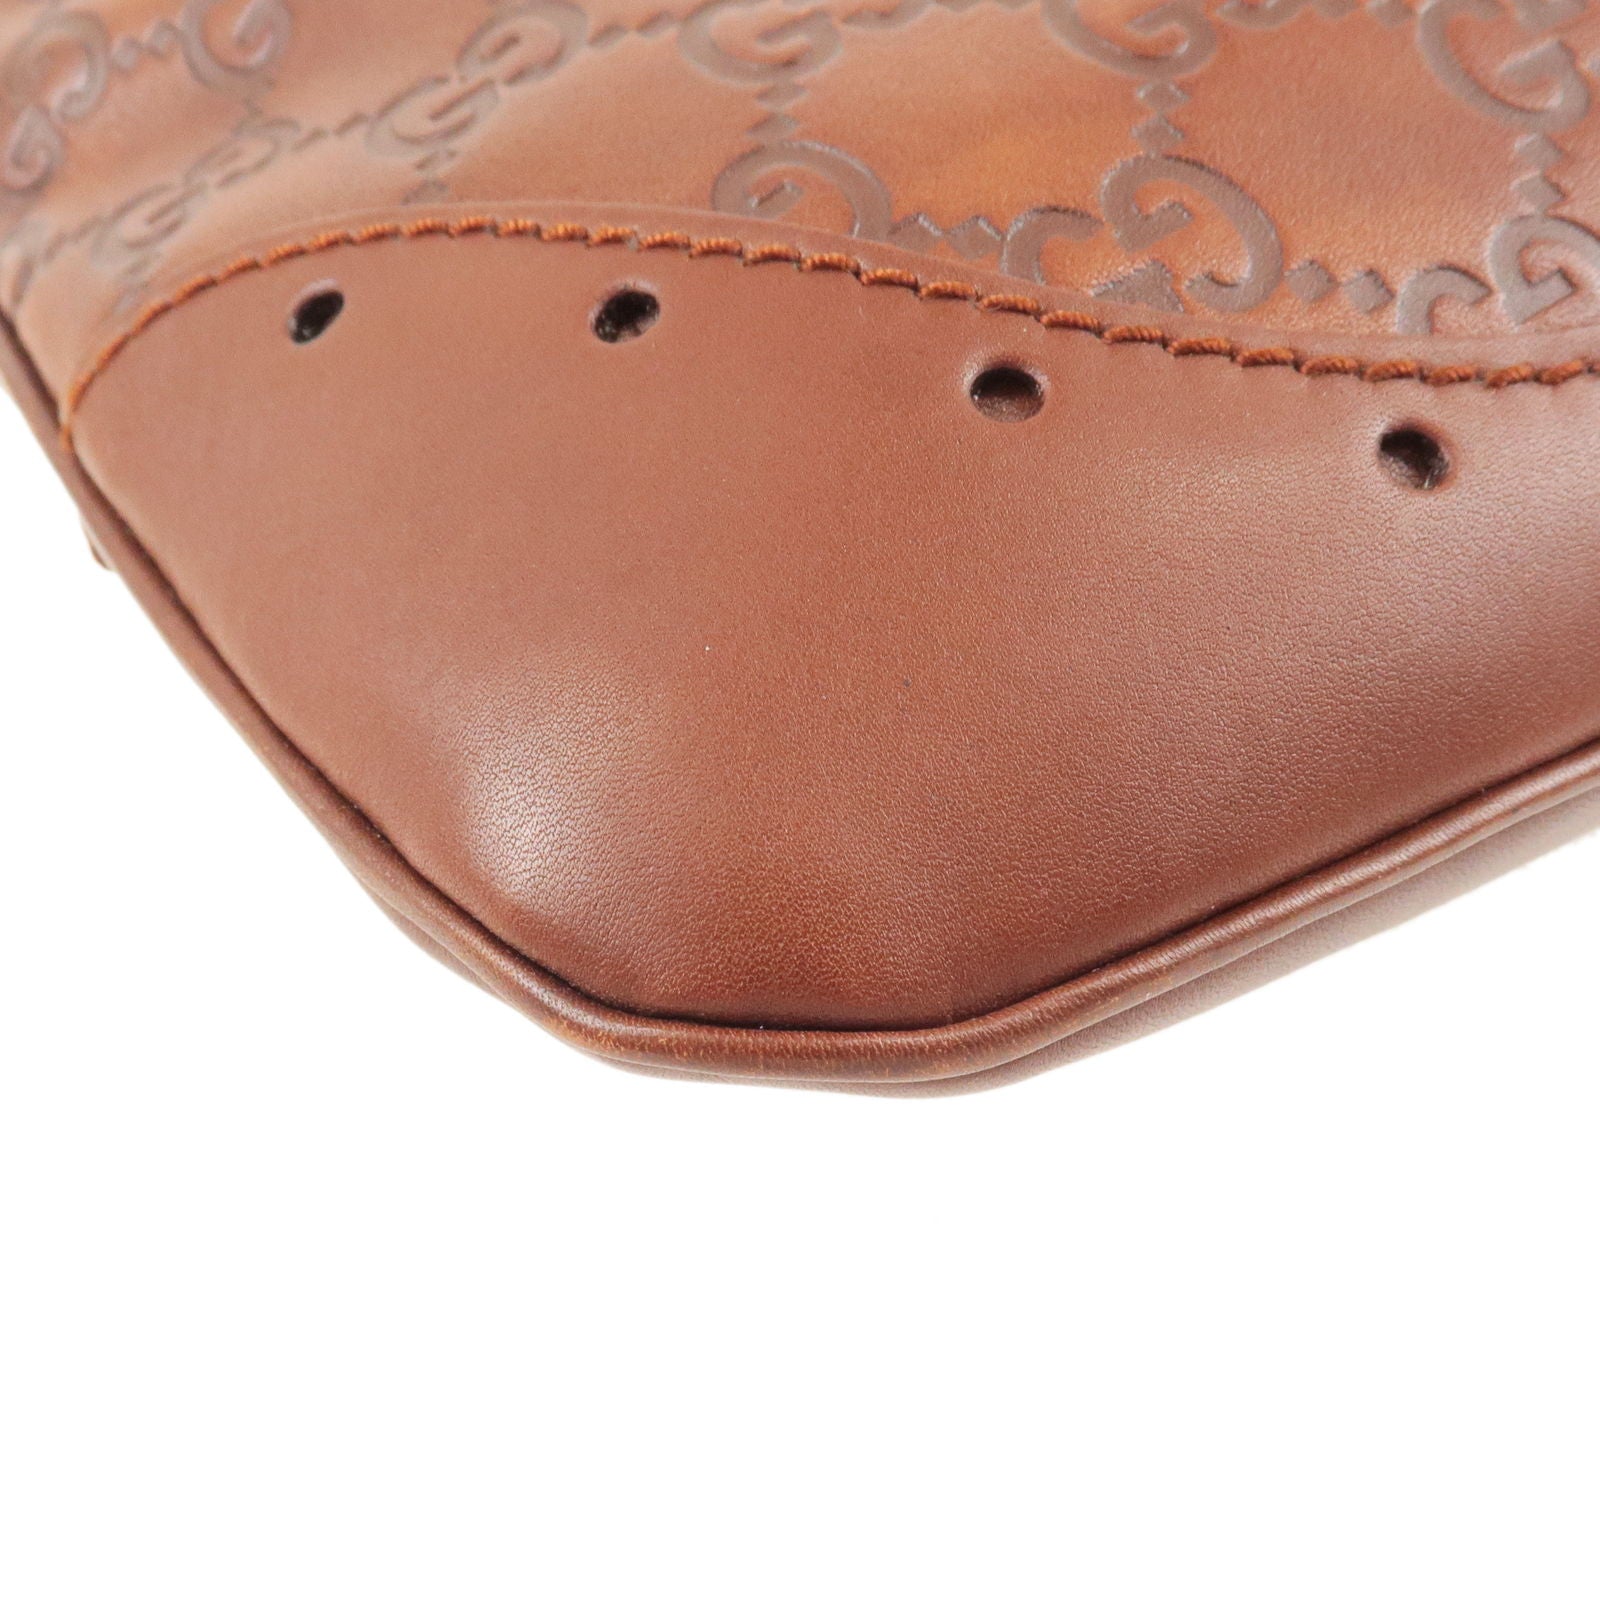 Gucci - Embossed Leather Monogram Speedy Medium Brown Top Handle Bag